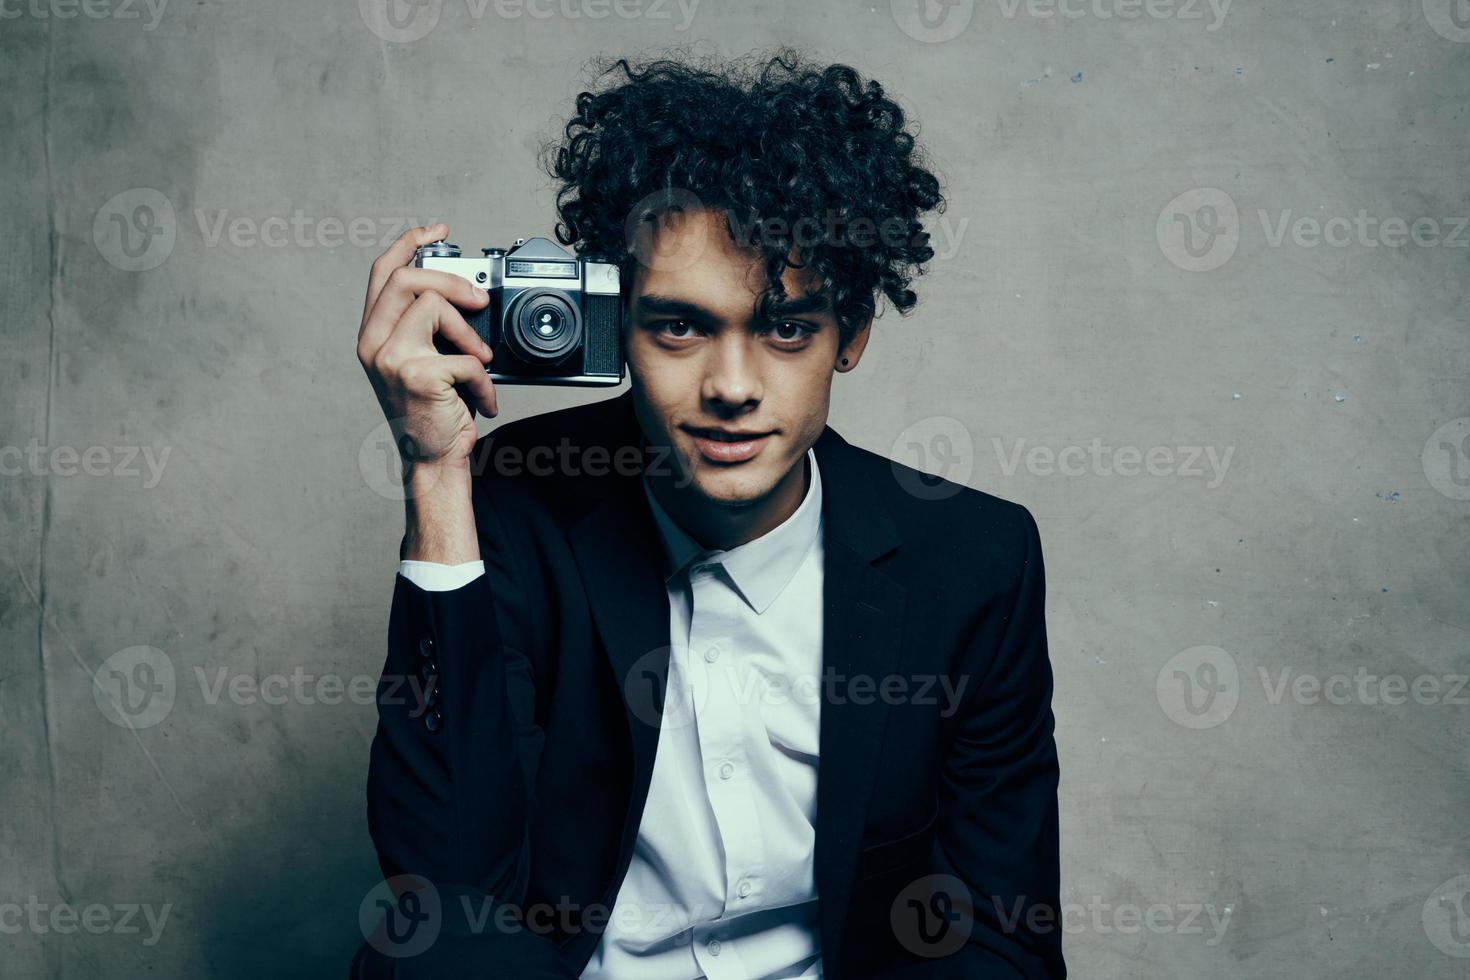 cara segurando uma Câmera dentro dele mão retro clássico terno encaracolado modelo homem foto